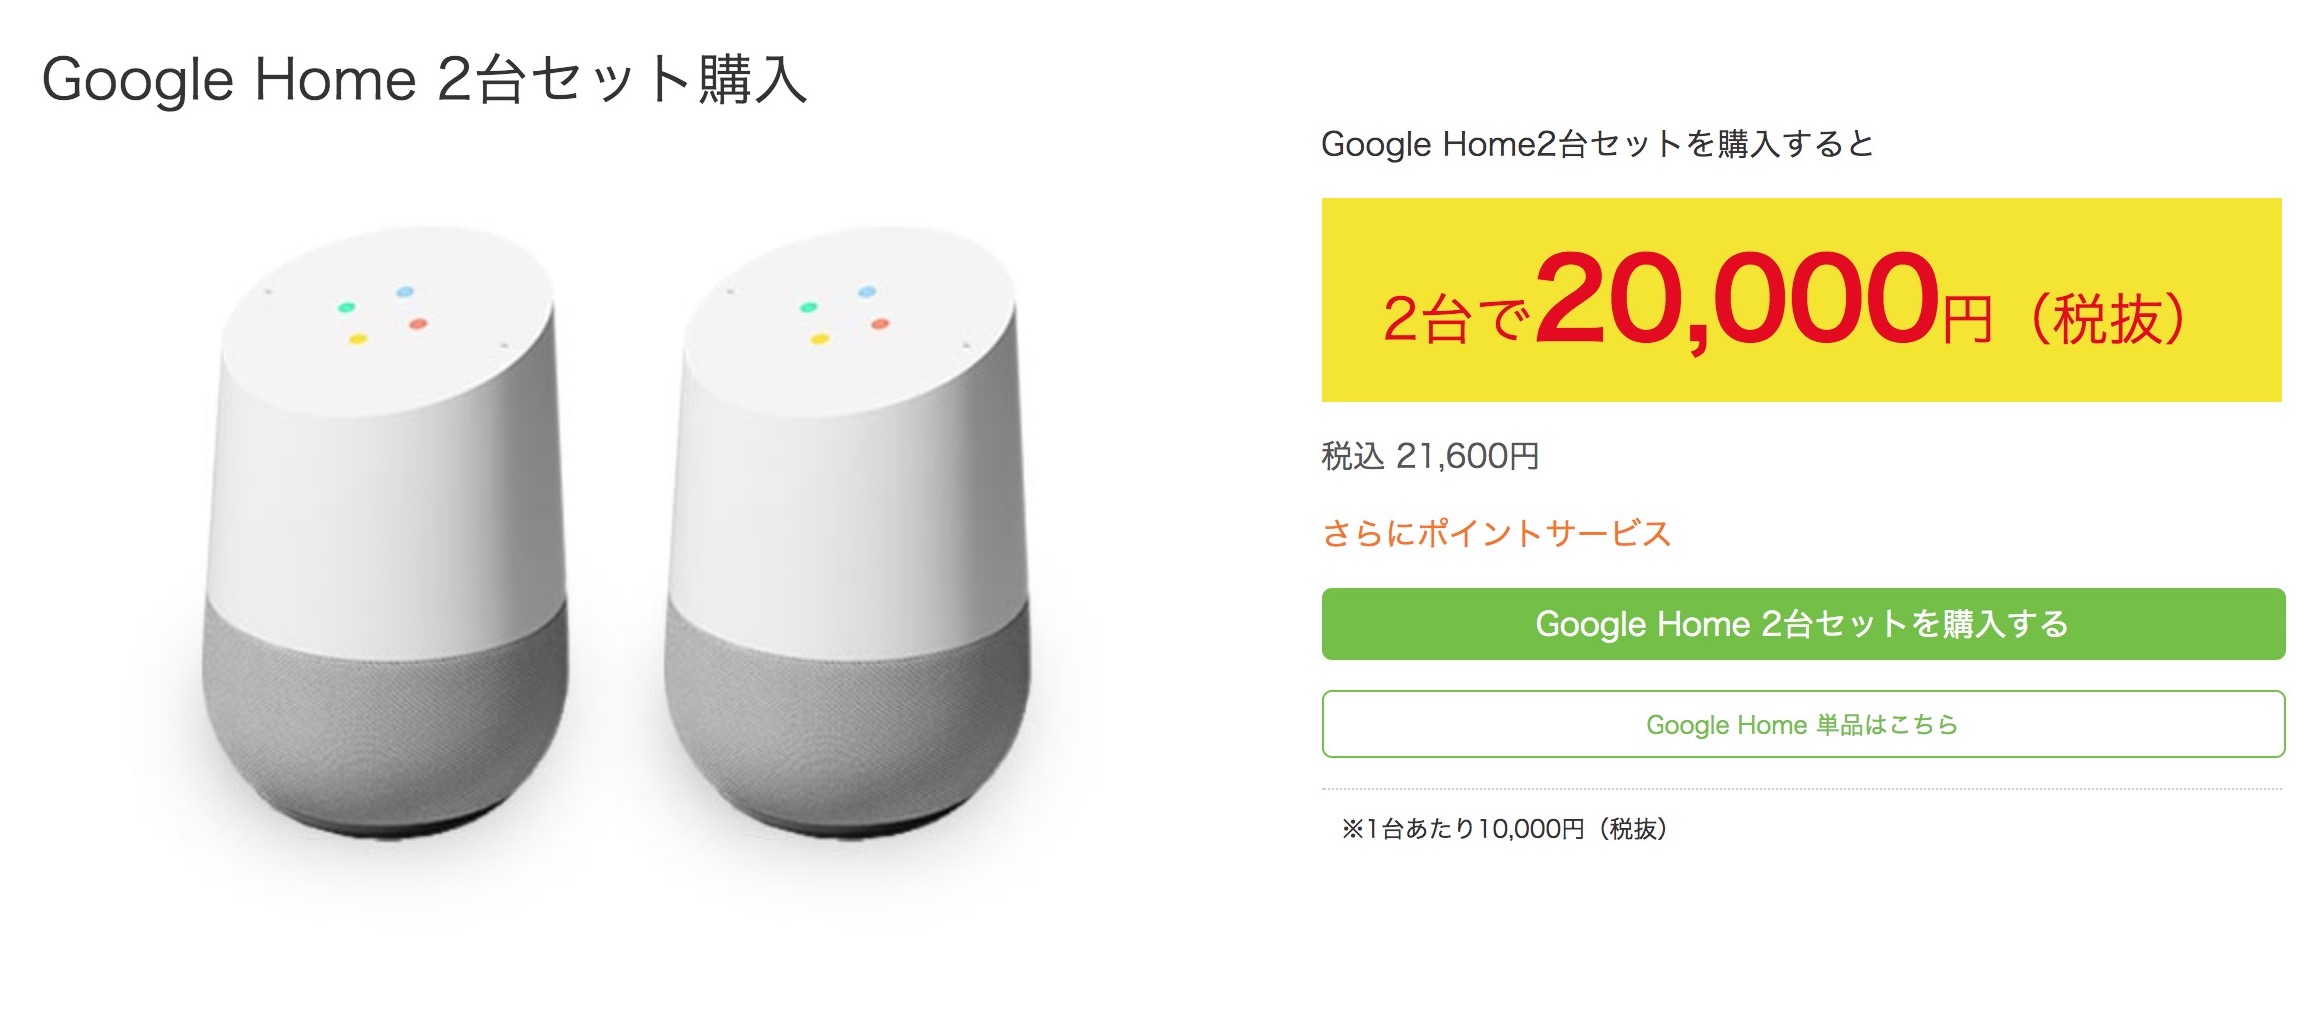 「Google Home」が発売。ビックカメラでChromecastが無料、2台セットで8,000円オフも